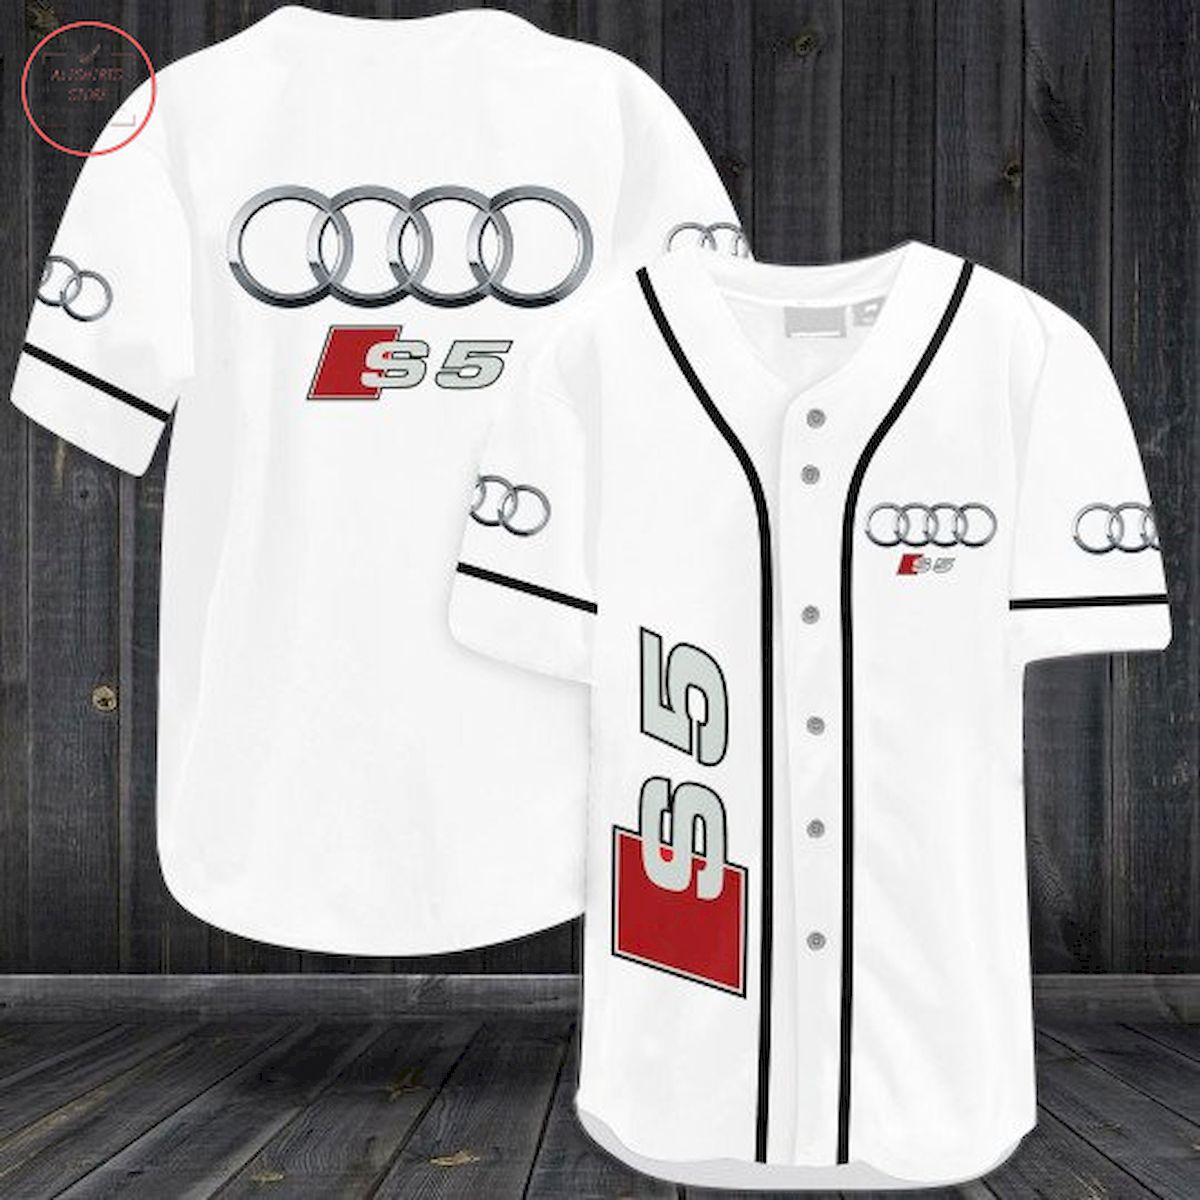 Audi S-5 Baseball Jersey